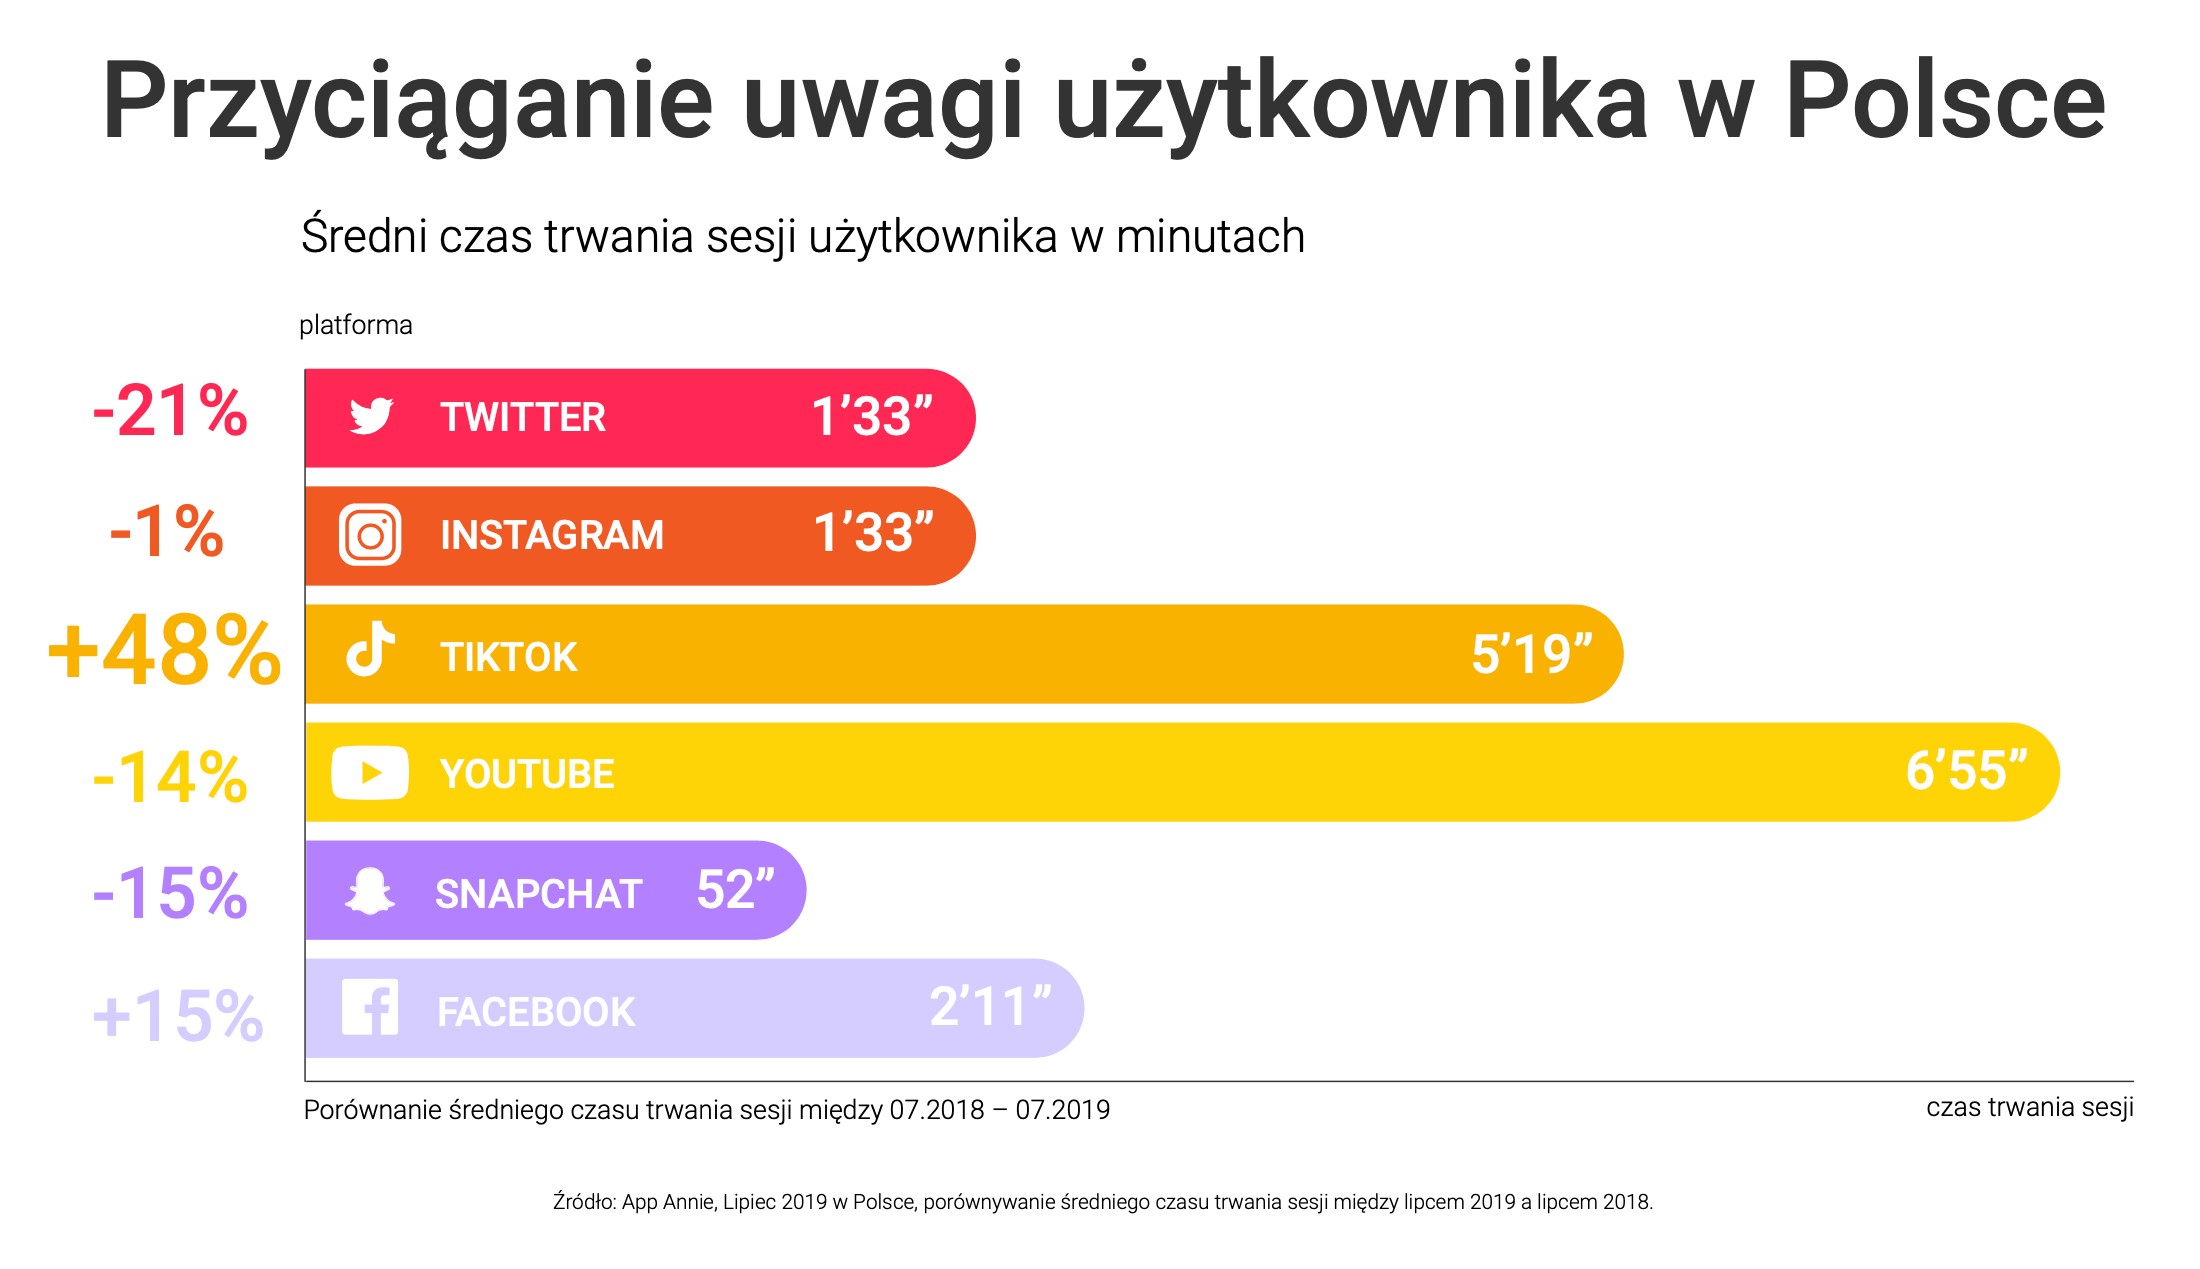 Przyciąganie uwagi użytkownika w Polsce (social media)